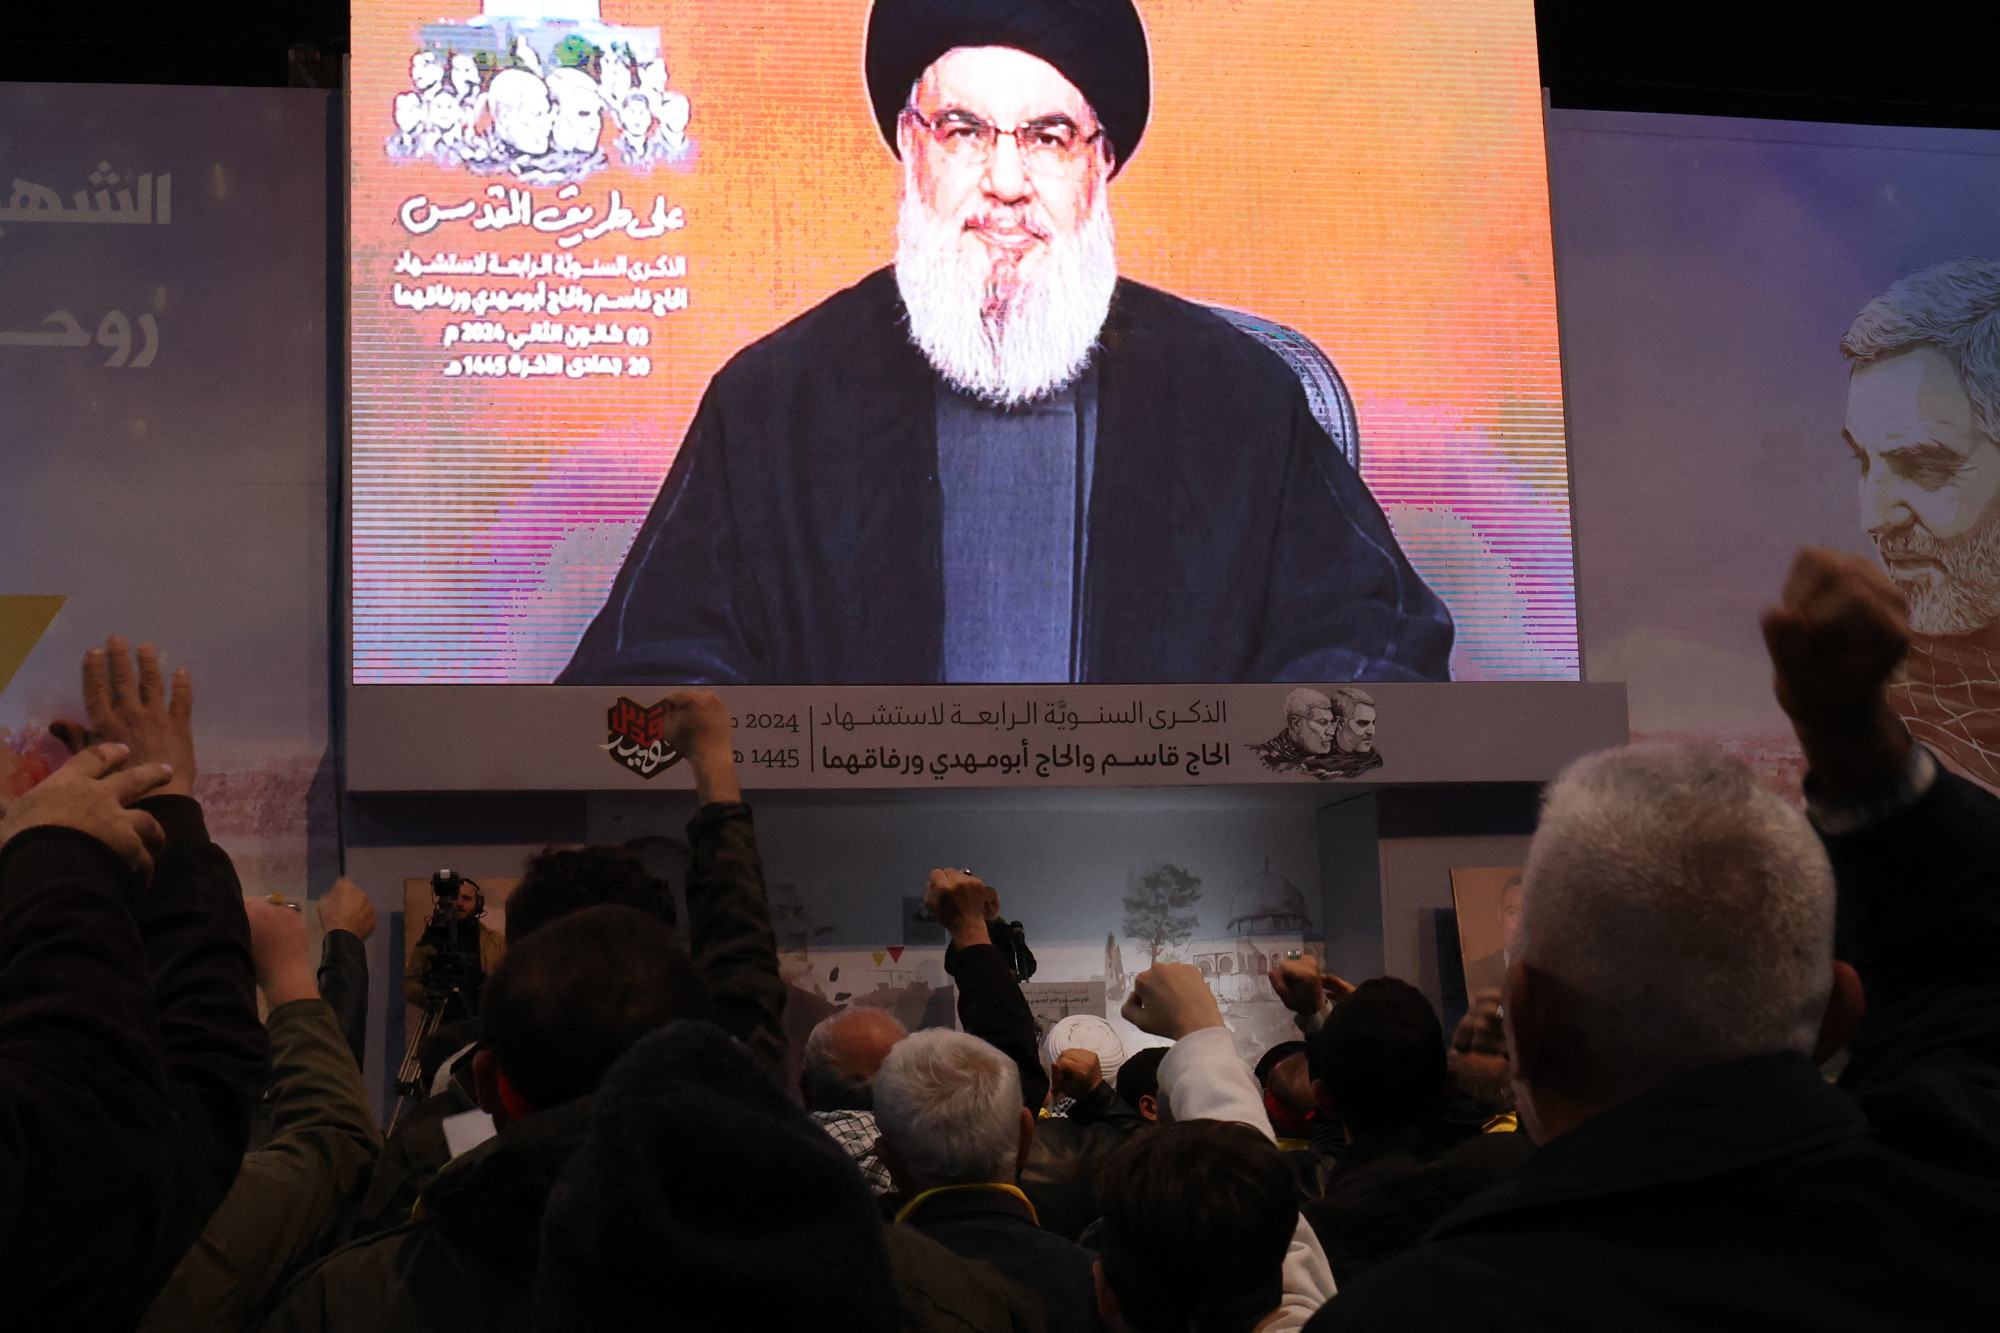 A Hezbollah vezetője szabályok nélküli háborút ígért arra az esetre, ha Izrael megtámadja Libanont